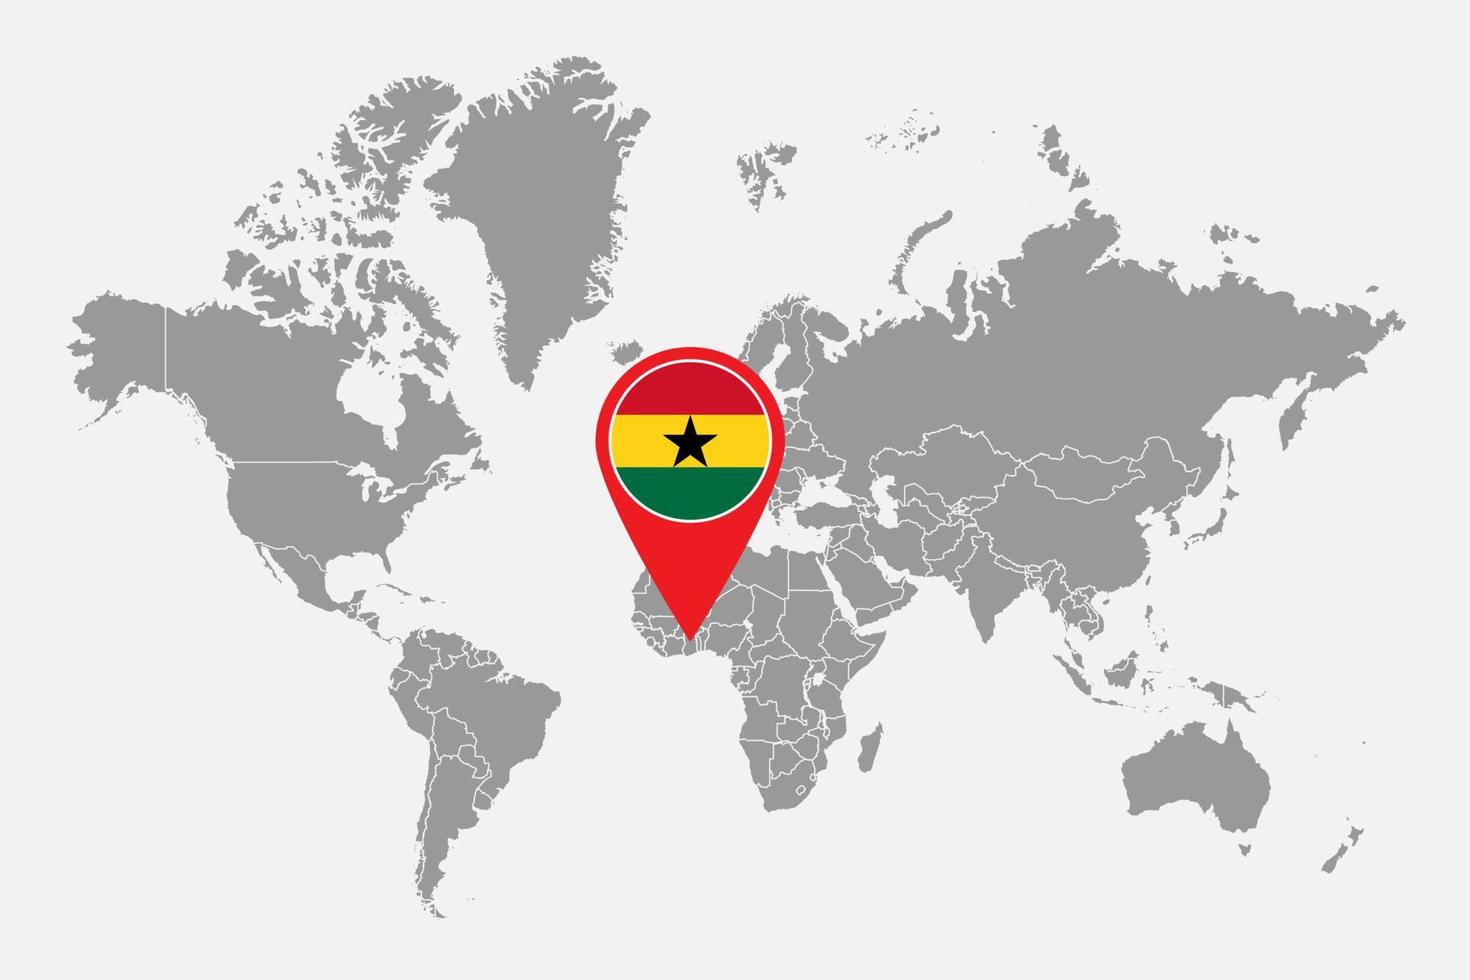 épinglez la carte avec le drapeau du ghana sur la carte du monde. illustration vectorielle. vecteur